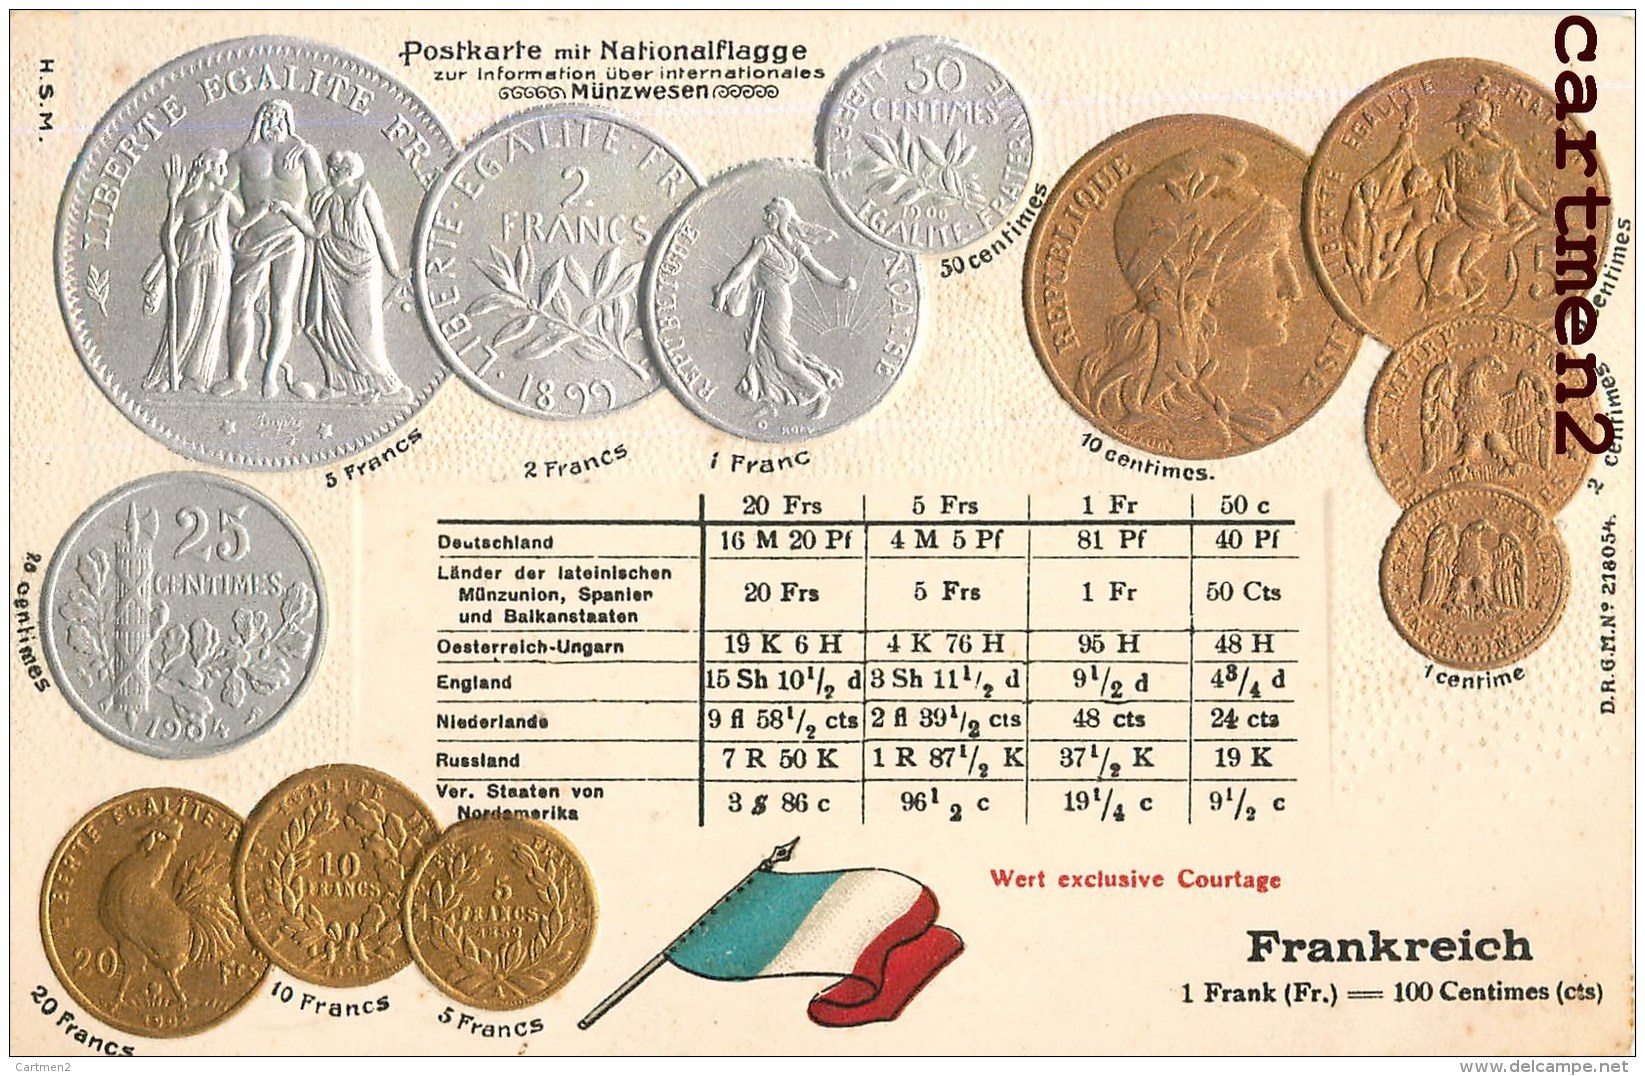 POSTKARTE MIT NATIONALFLAGGE LE FRANC FRANCAIS PIECEDE 5 FRANC EN ARGENT BOURSE GAUFREE EMBOSSED PATRIOTISME - Coins (pictures)